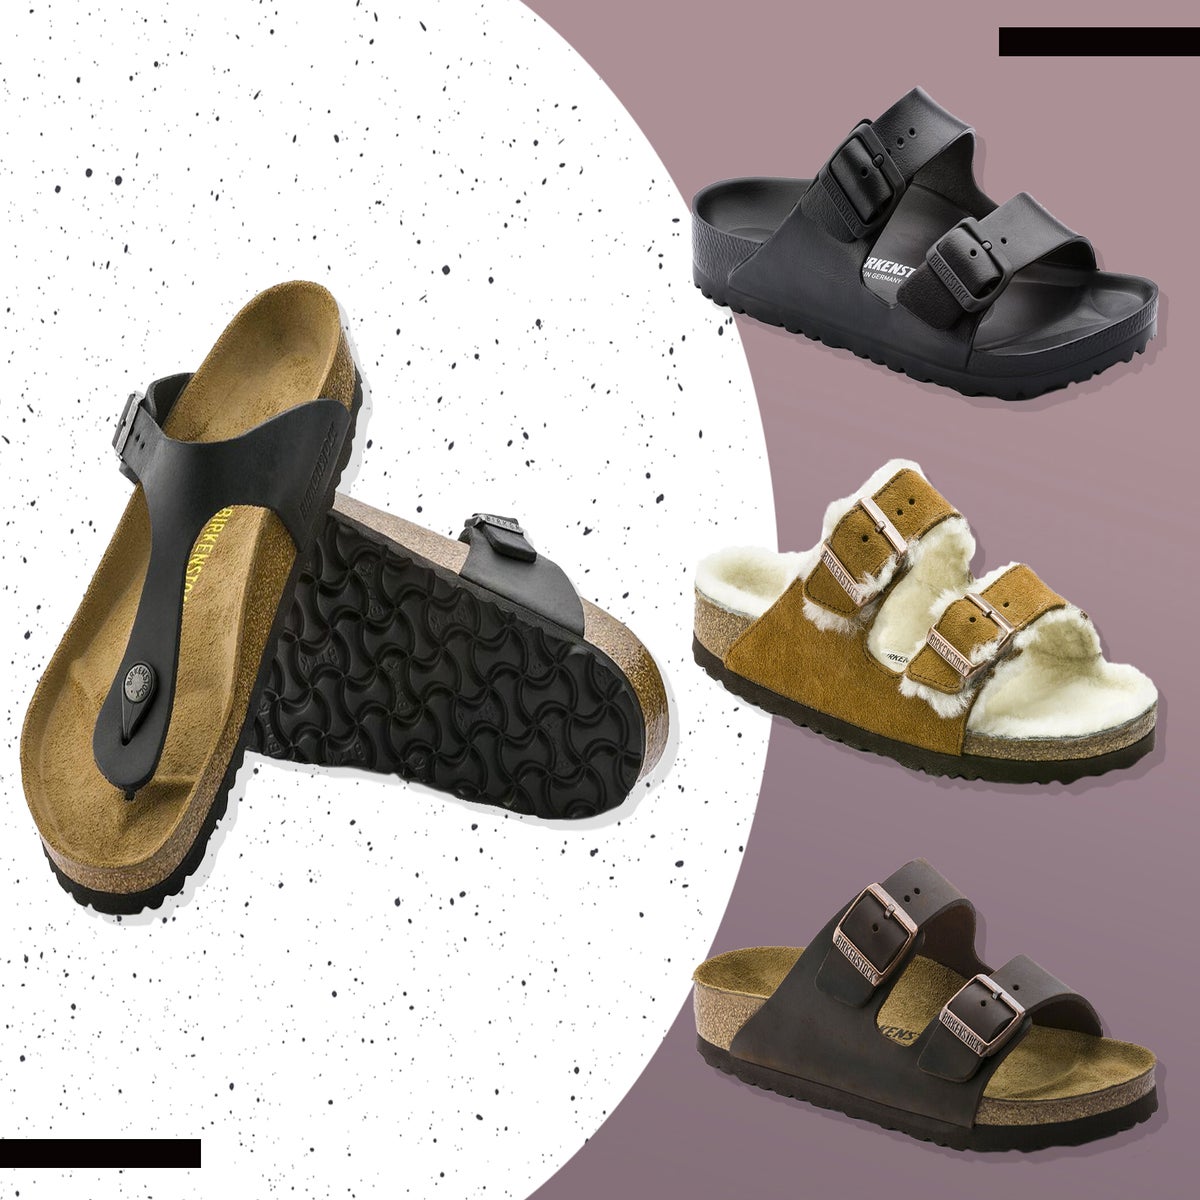 tommelfinger Arne argument Birkenstock: Which sandals should you buy? | The Independent